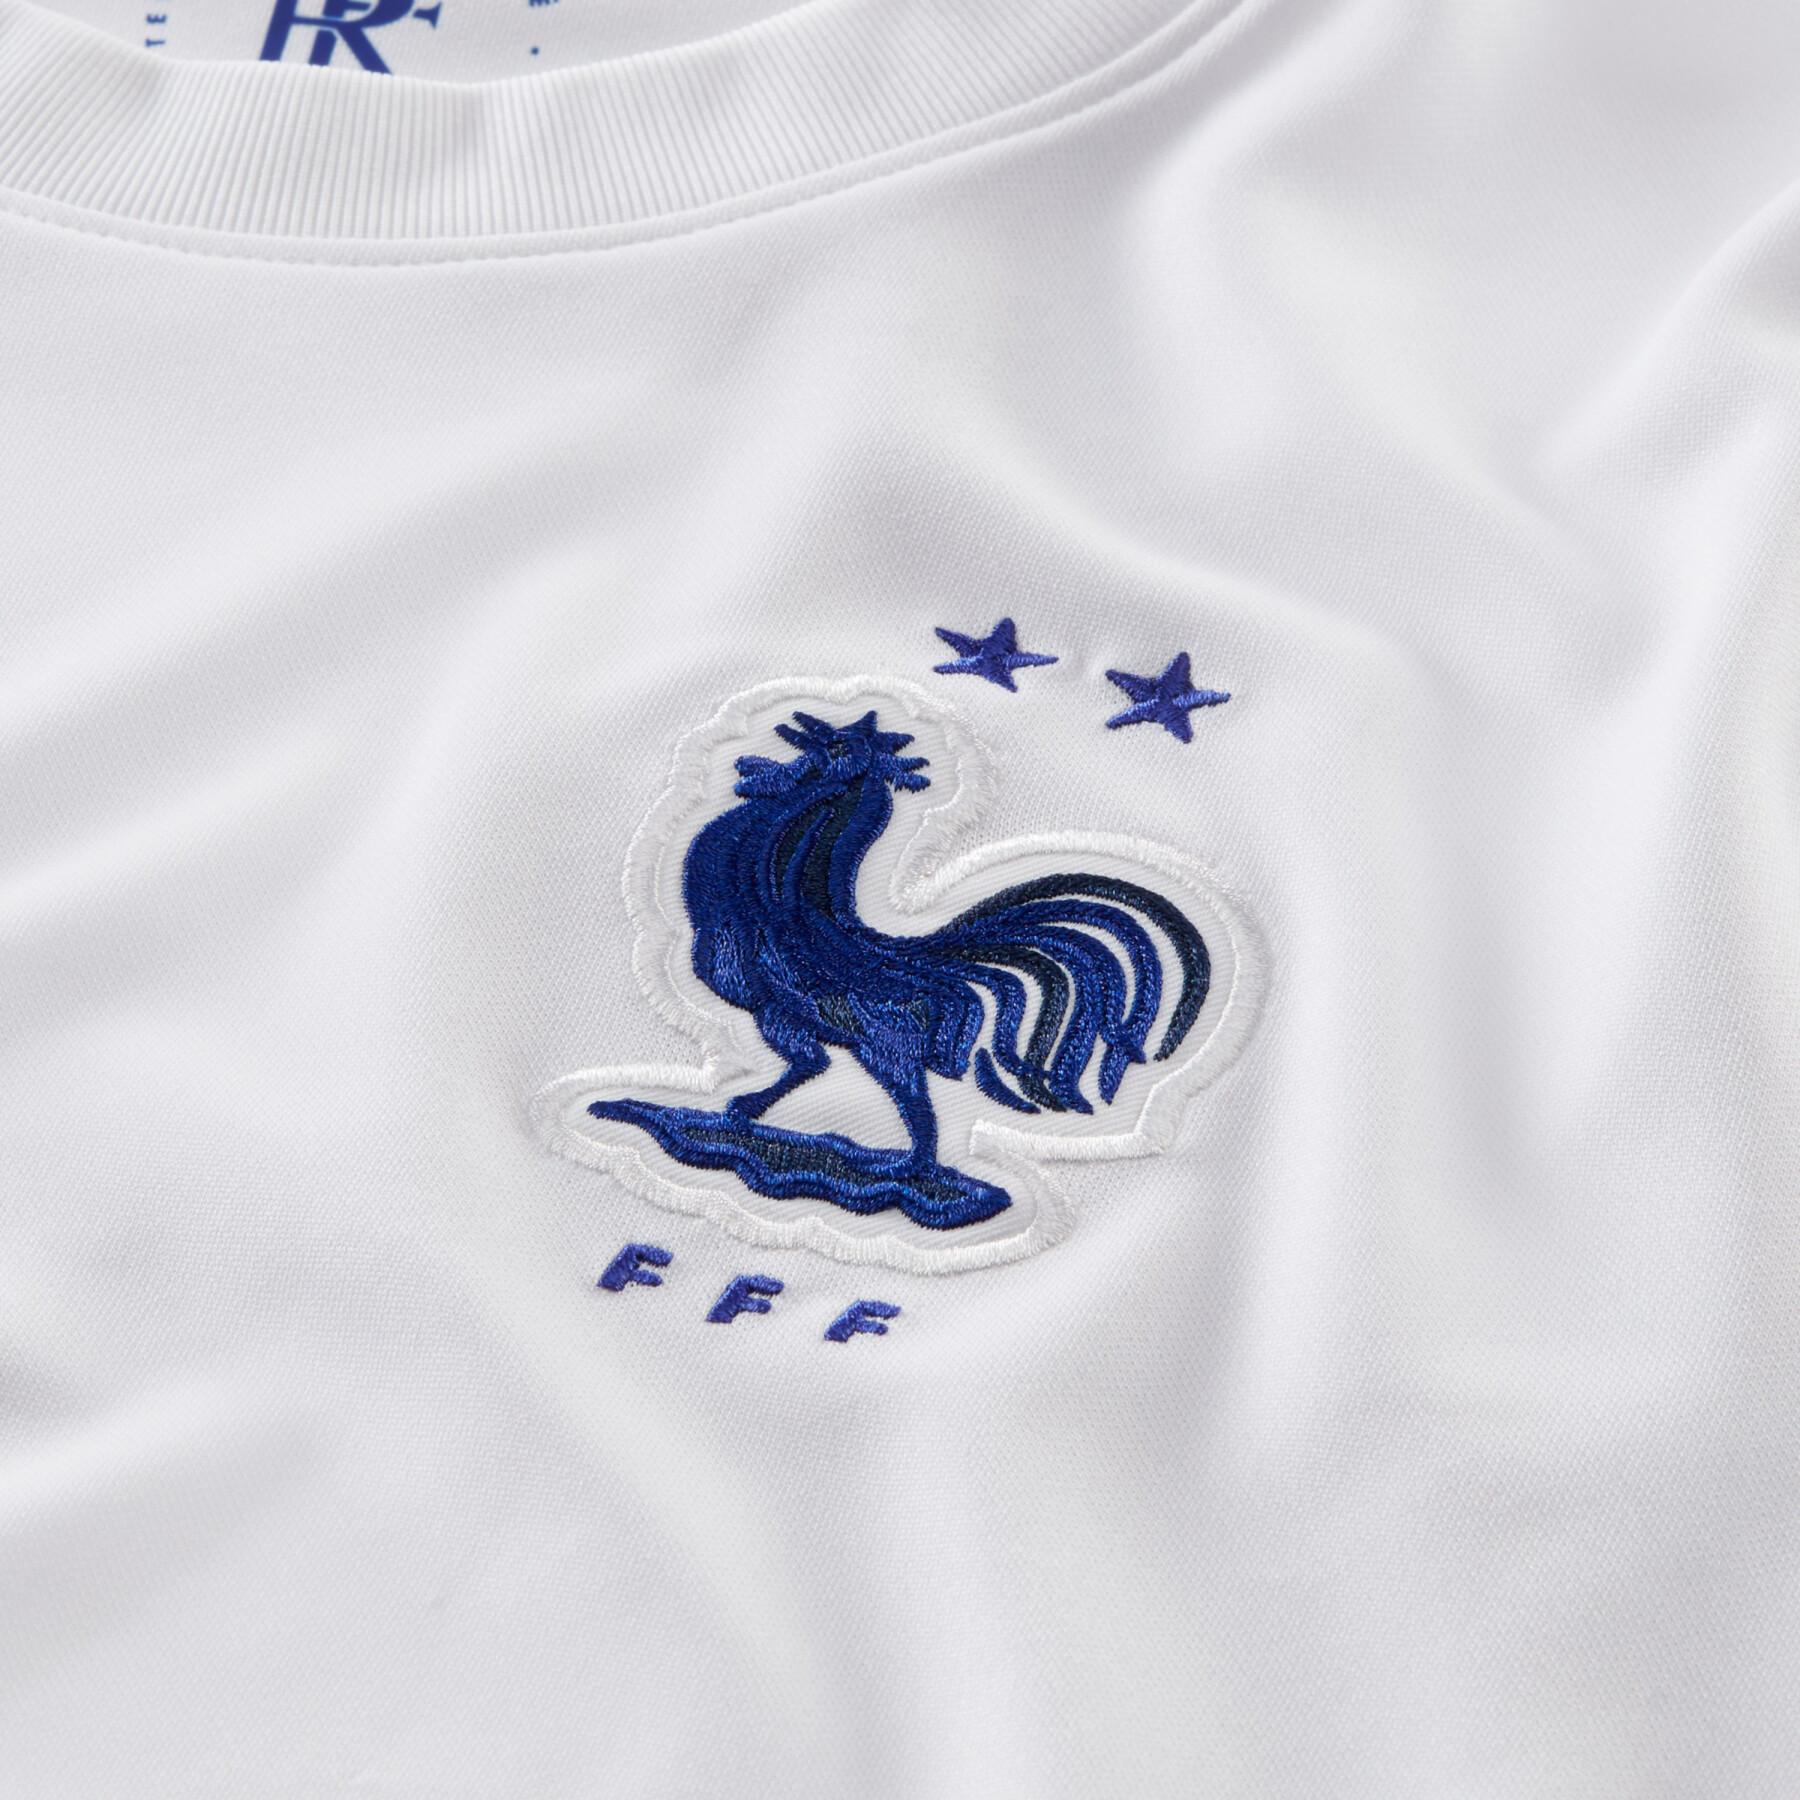 Camiseta segunda equipación France 2020